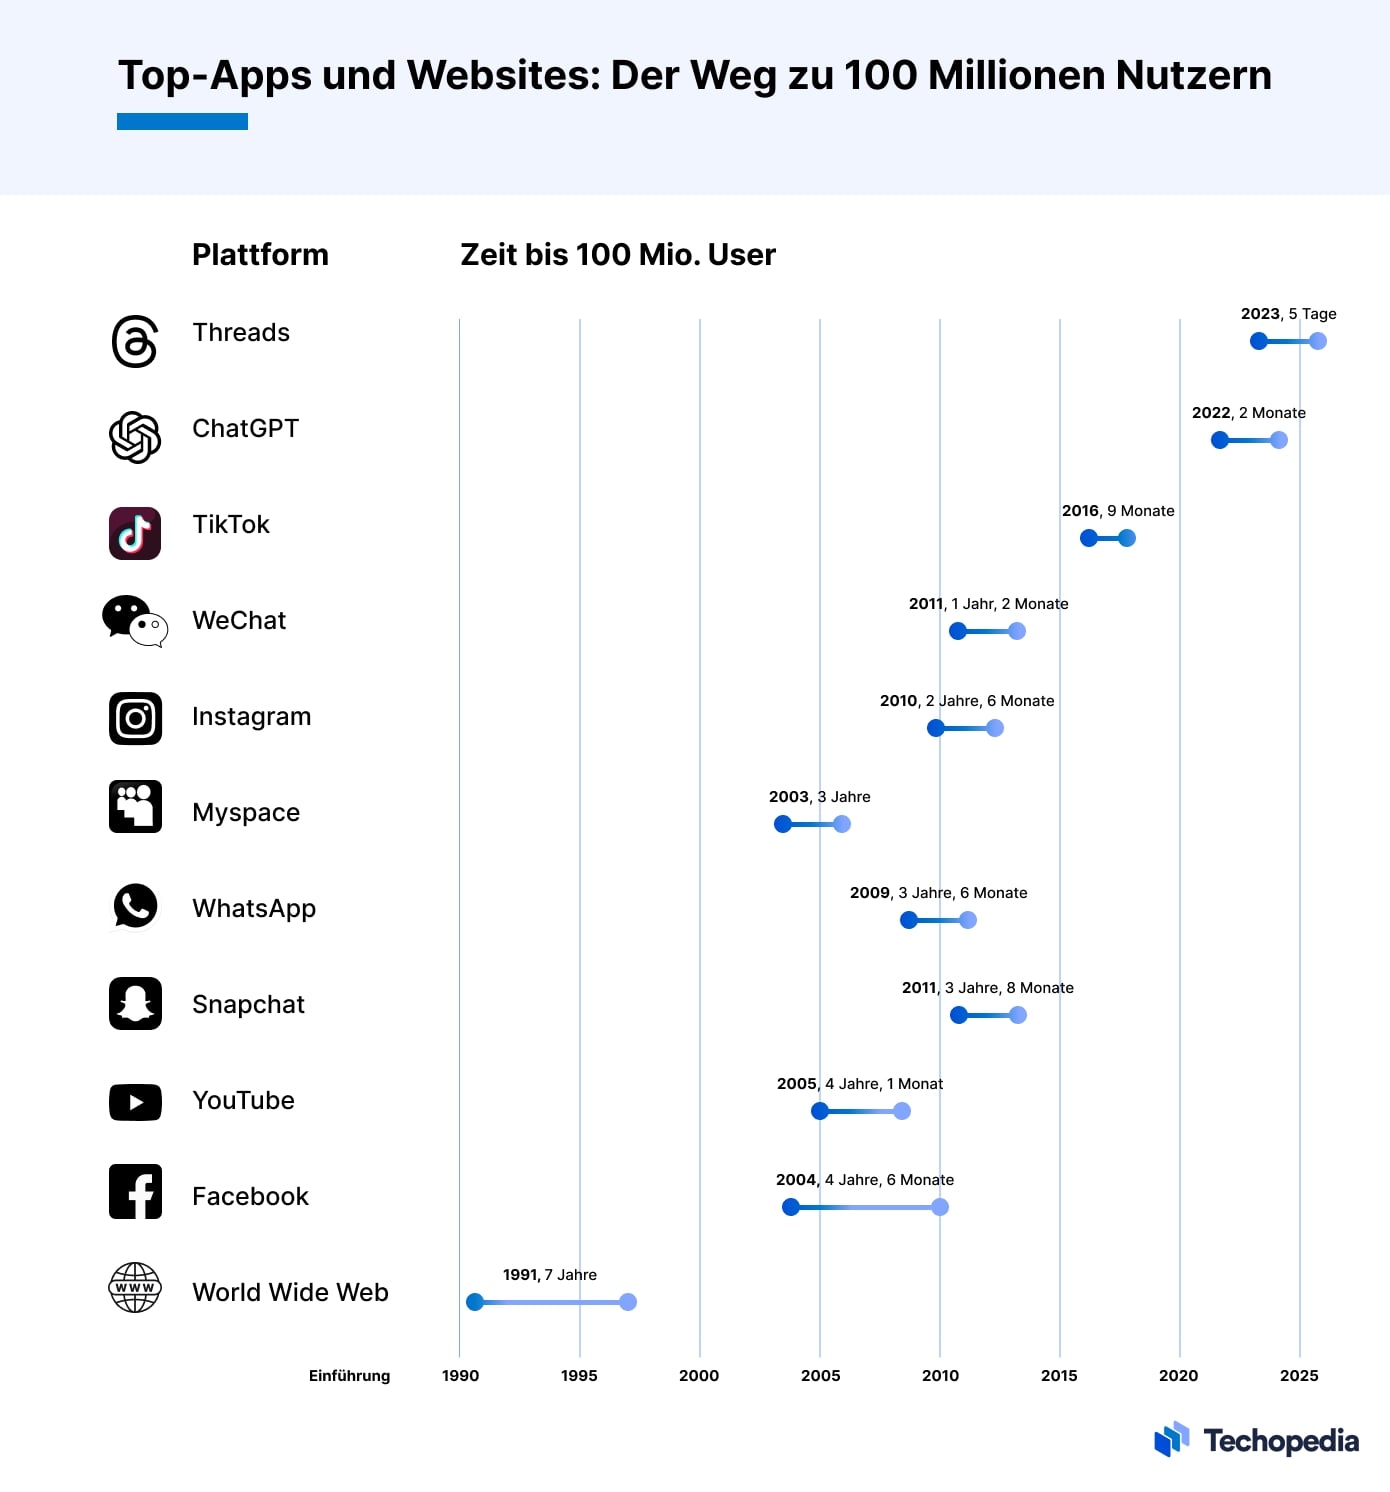 Zeit bis zu 100 Mio. Usern bei Top-Apps und Websites